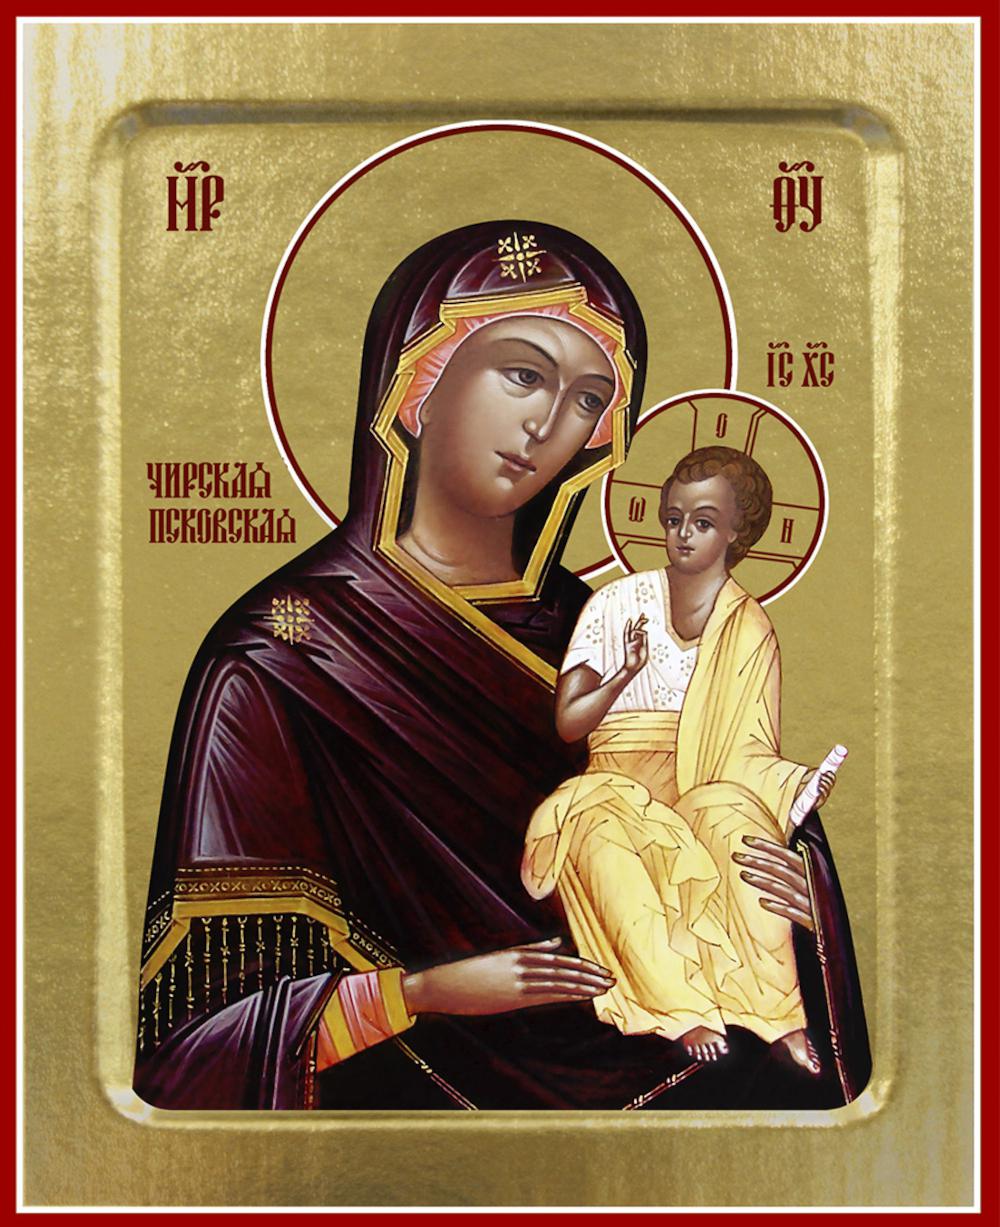 Икона Синопсисъ Пресвятой Богородицы, Чирская Псковская на дереве 125 х 160